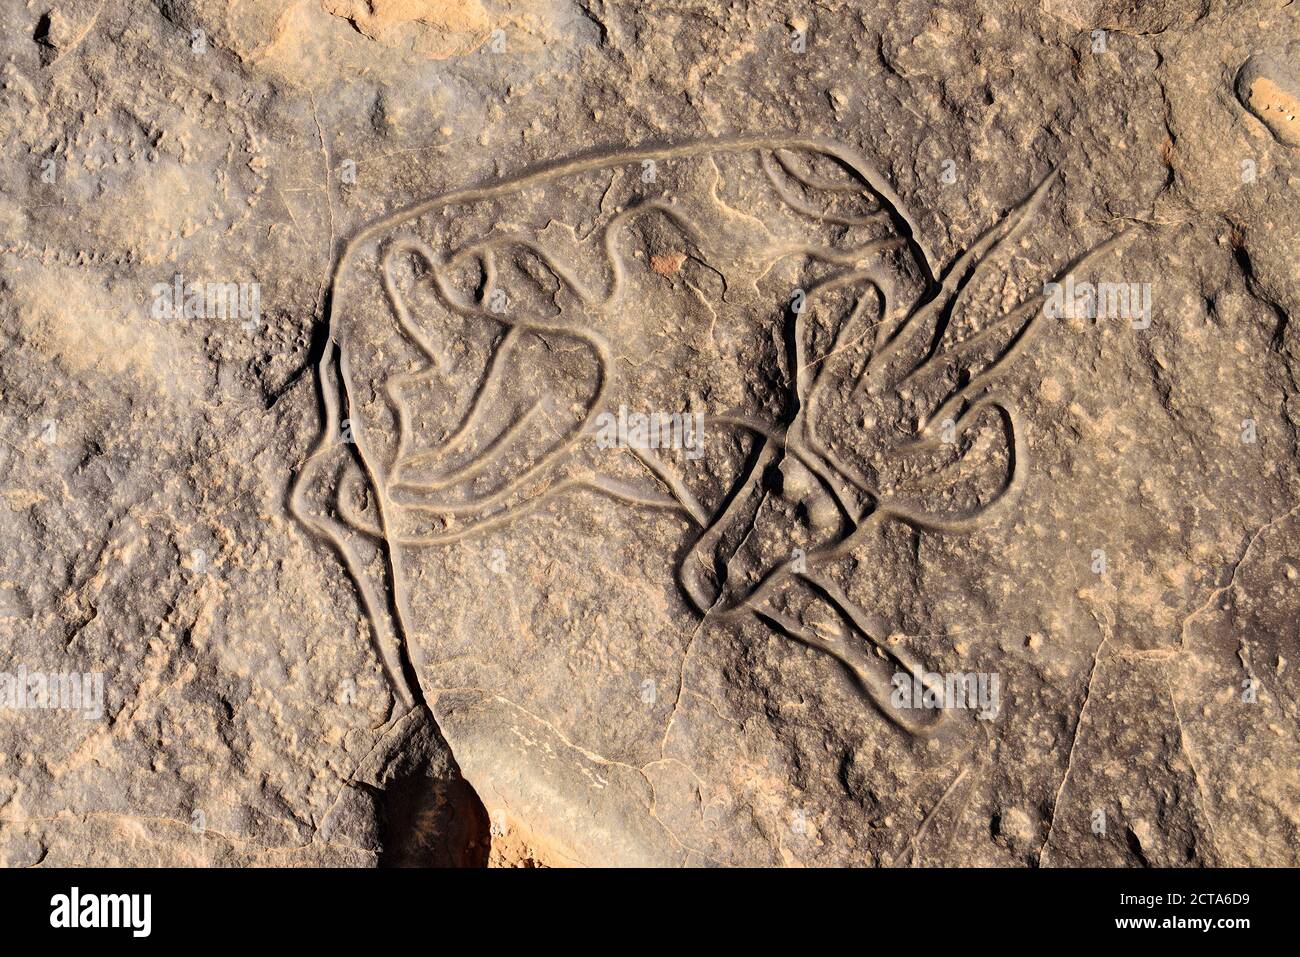 Afrique du Nord, Sahara, Algérie, Parc national de Tassili n'Ajjer, Tadrart, art rupestre néolithique, gravure sur roche de la gazelle endormie Banque D'Images